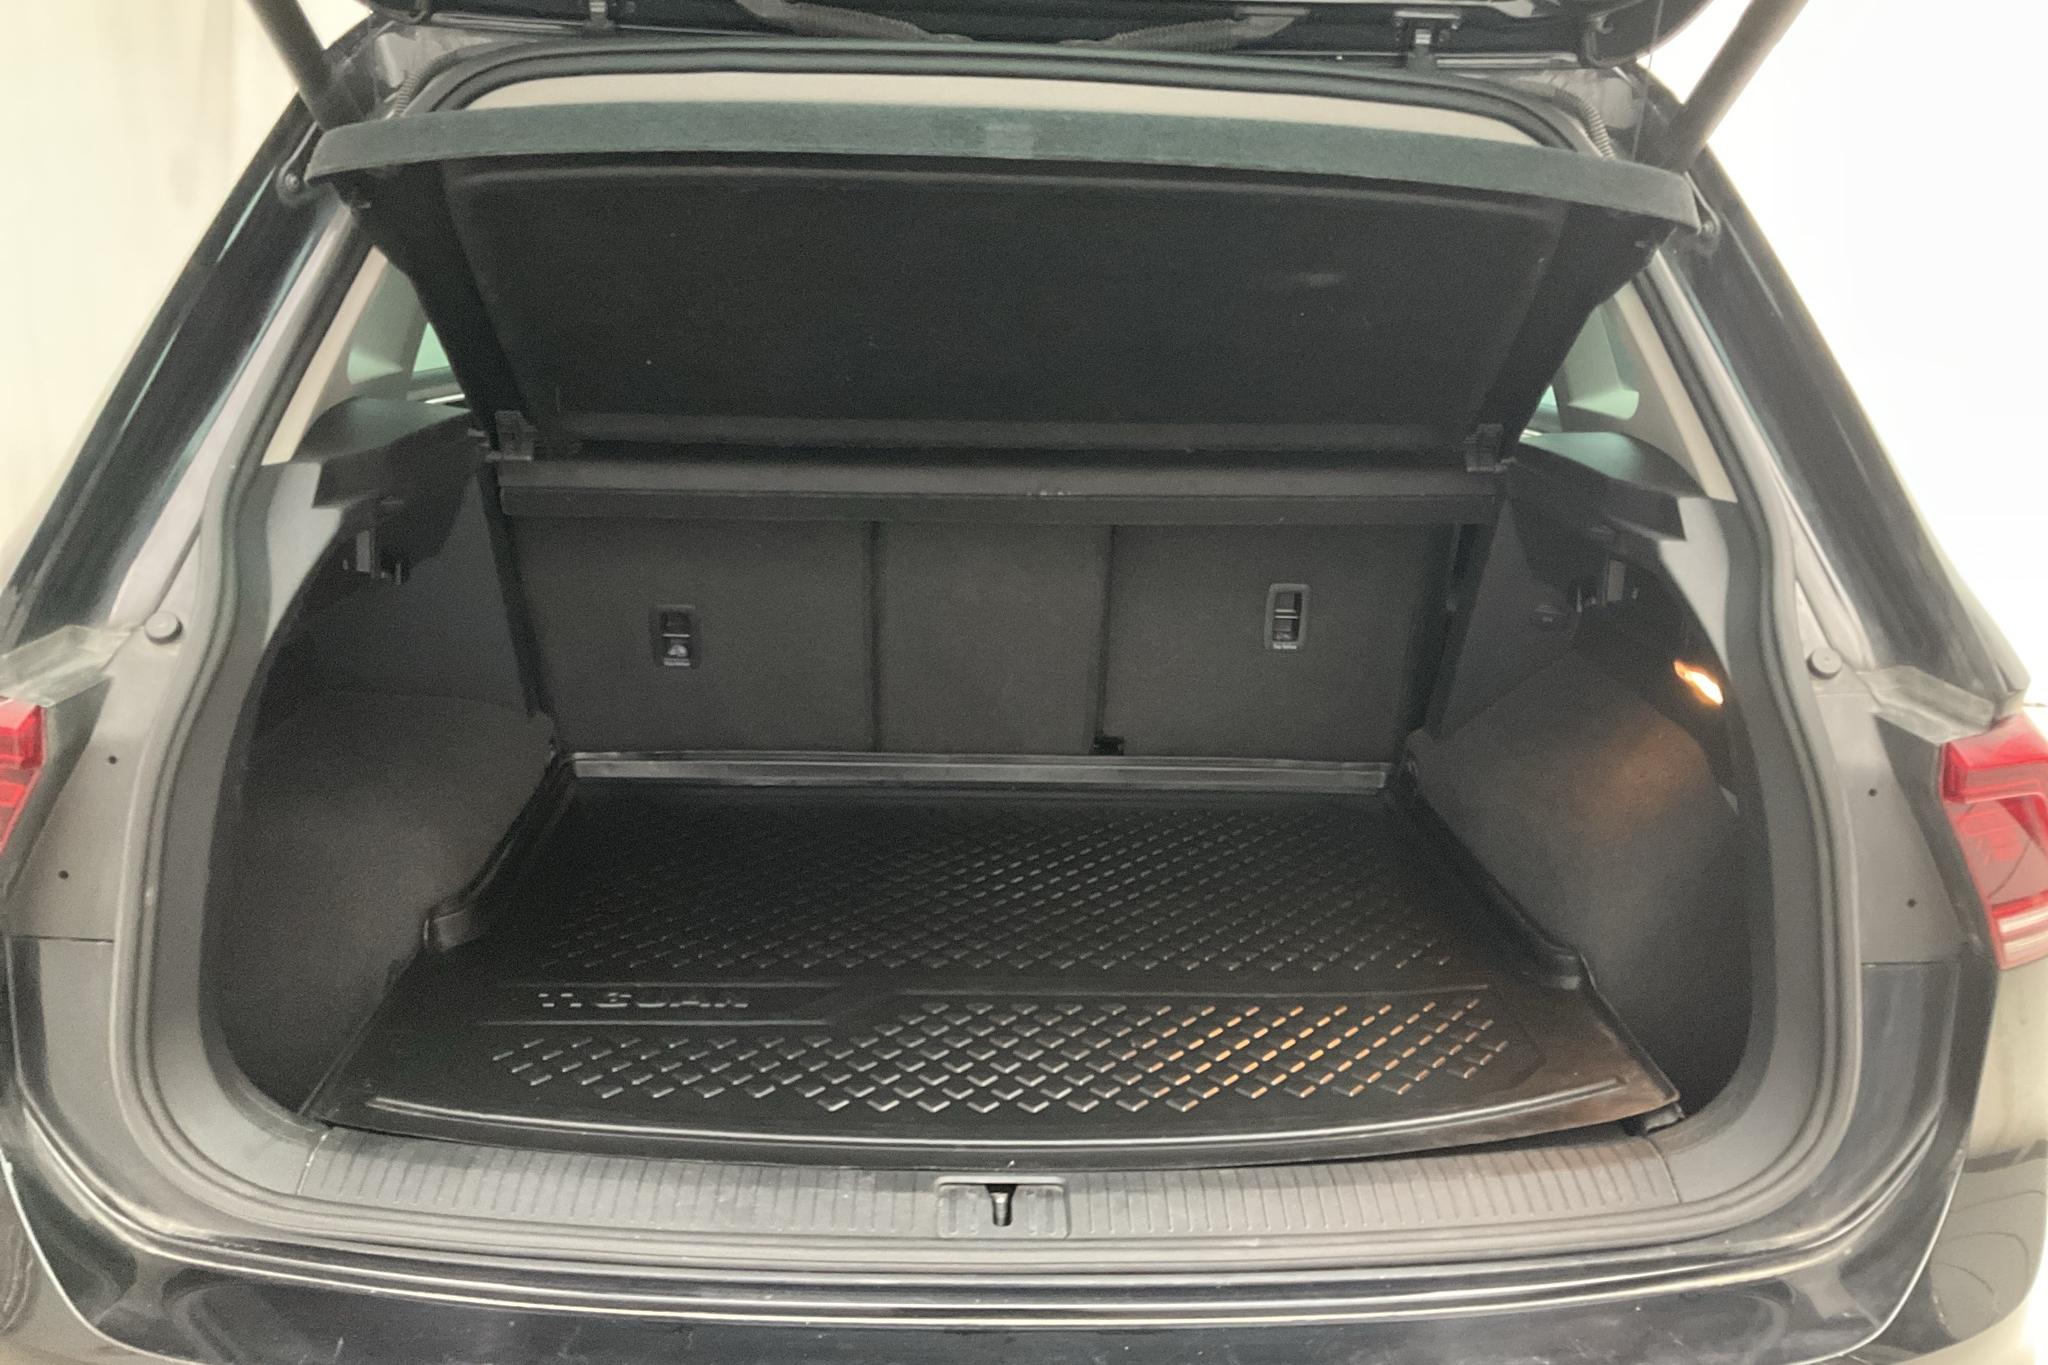 VW Tiguan 2.0 TDI 4MOTION (190hk) - 116 010 km - Automaatne - must - 2017